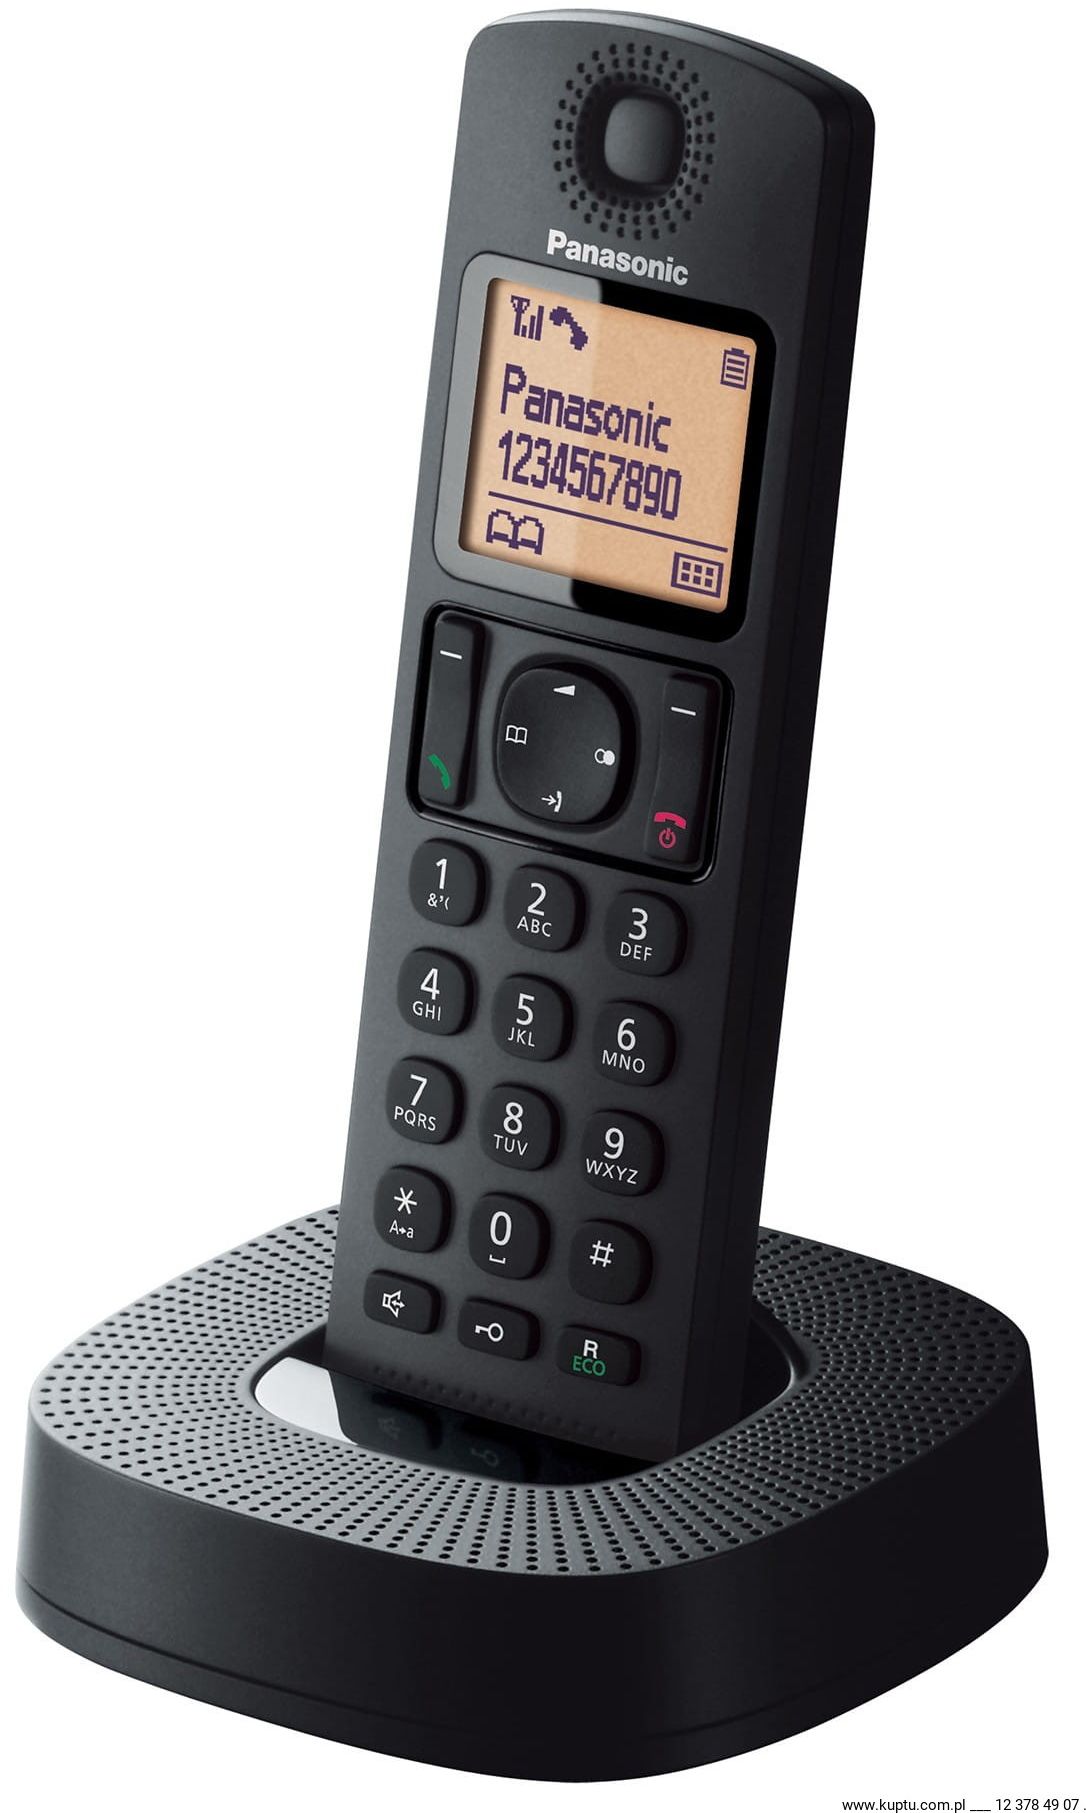 PANASONIC KX-TGC310 TELEFON BEZPRZEWODOWY DECT